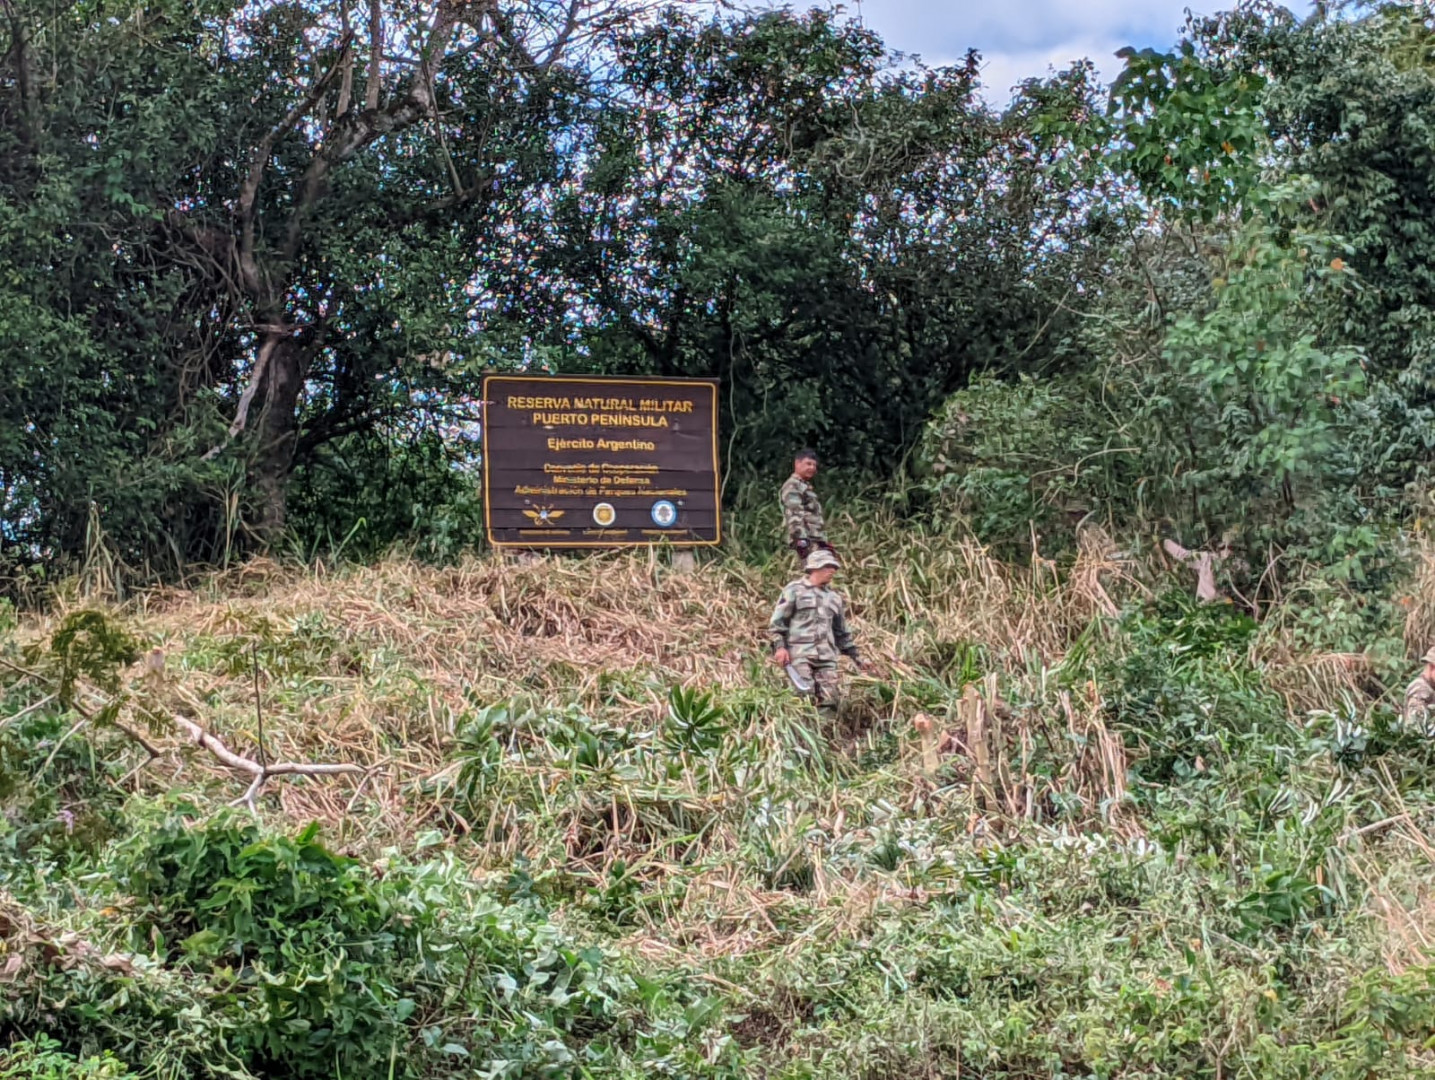 Reserva Natural de la Defensa “Puerto Península” Ejército 3